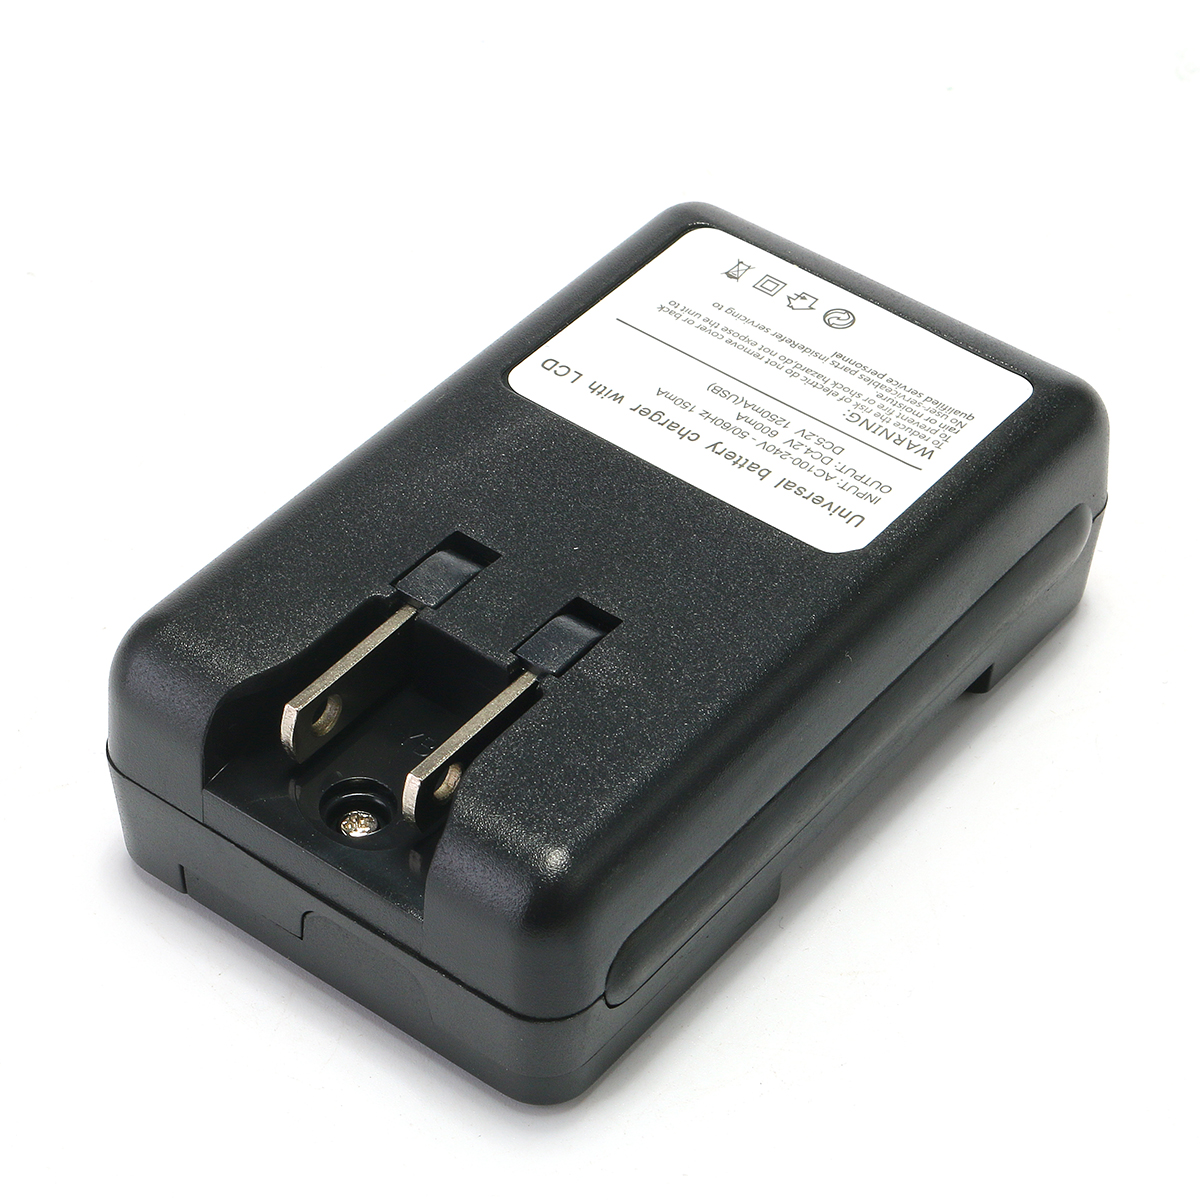 Battery adapter. Зарядка для аккумулятор для нокиа BL-5c. Зарядник для аккумулятор Nokia BL-5c. Зарядка для аккумулятора BL-5b. Зарядное устройство для BL-5c.